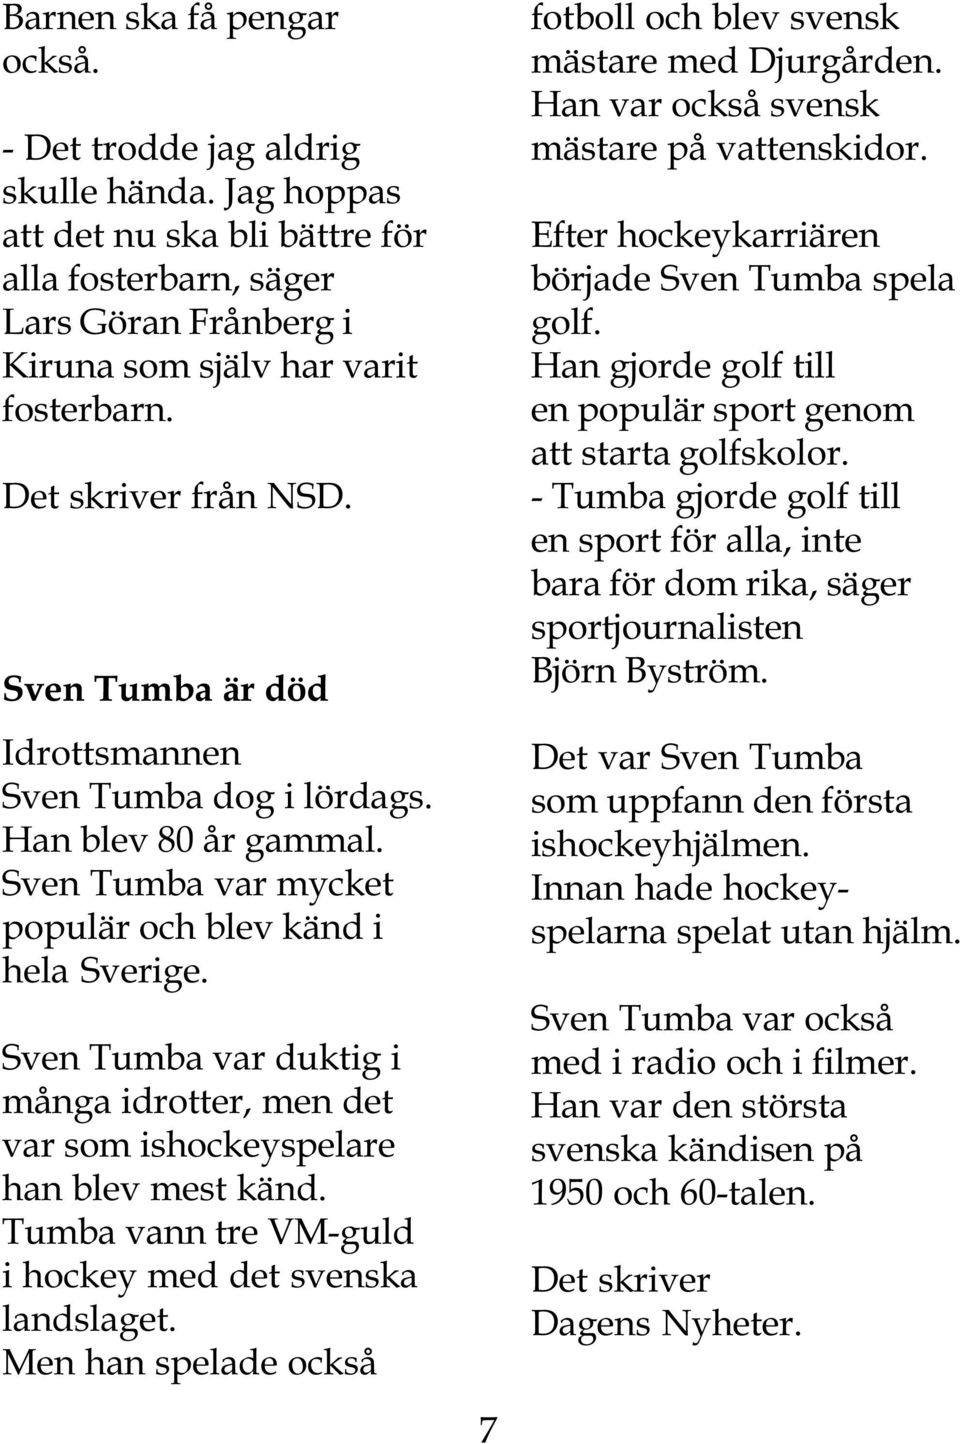 Sven Tumba var duktig i många idrotter, men det var som ishockeyspelare han blev mest känd. Tumba vann tre VM-guld i hockey med det svenska landslaget.